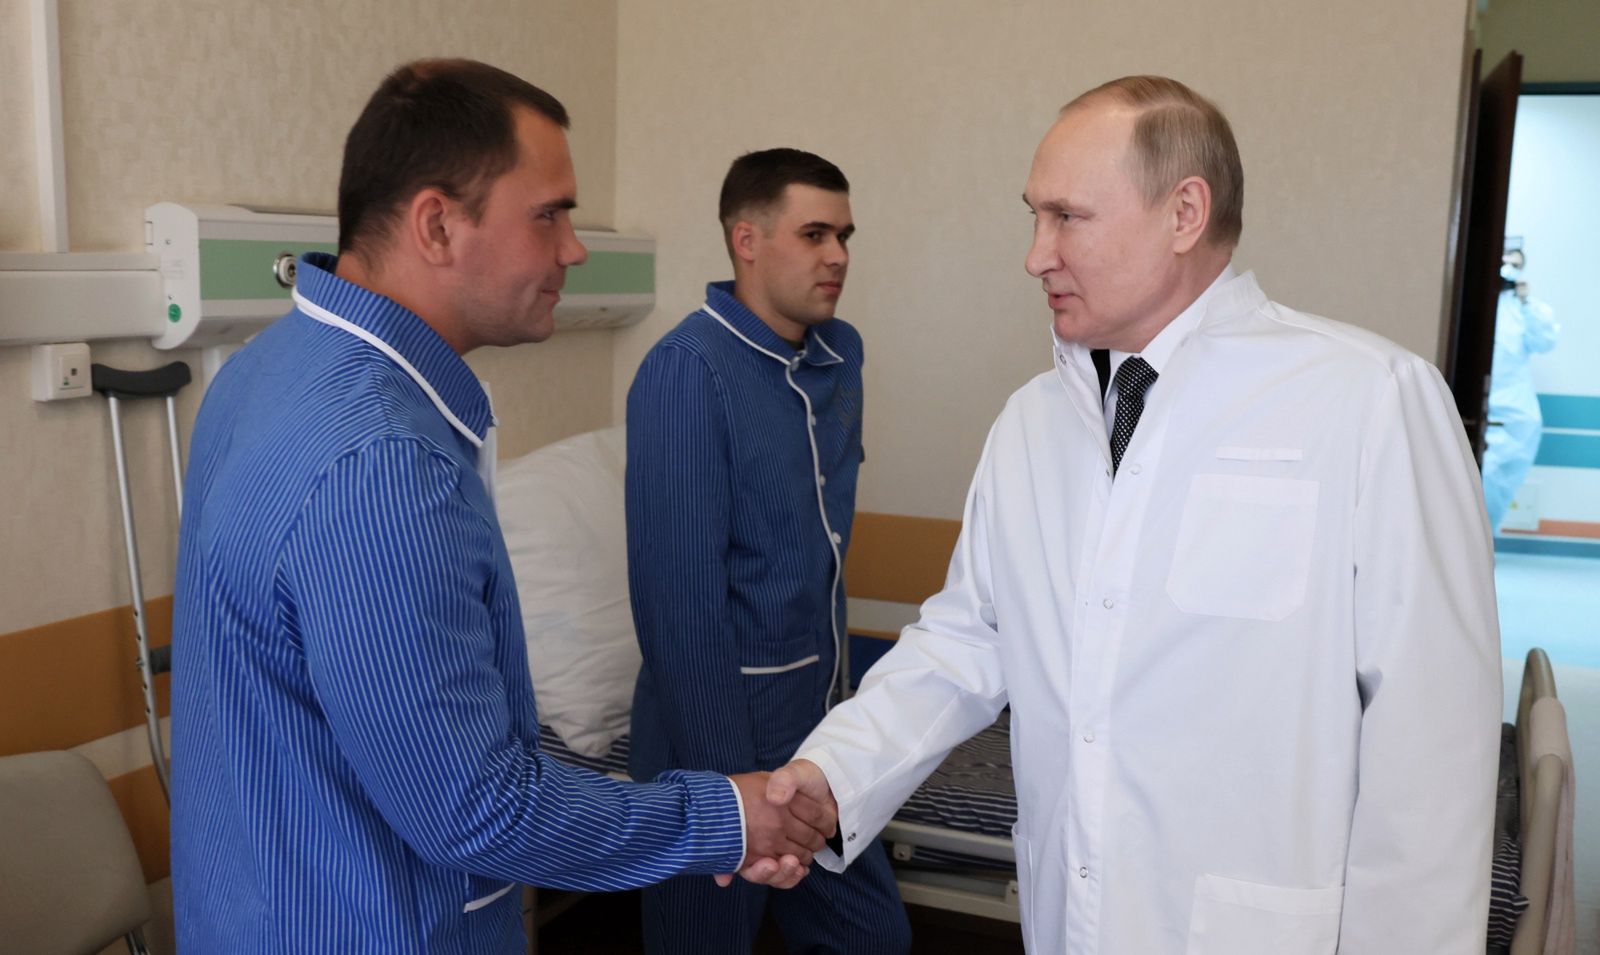 Putin przebrany za lekarza odwiedził rannych żołnierzy. "Wszyscy są bohaterami"